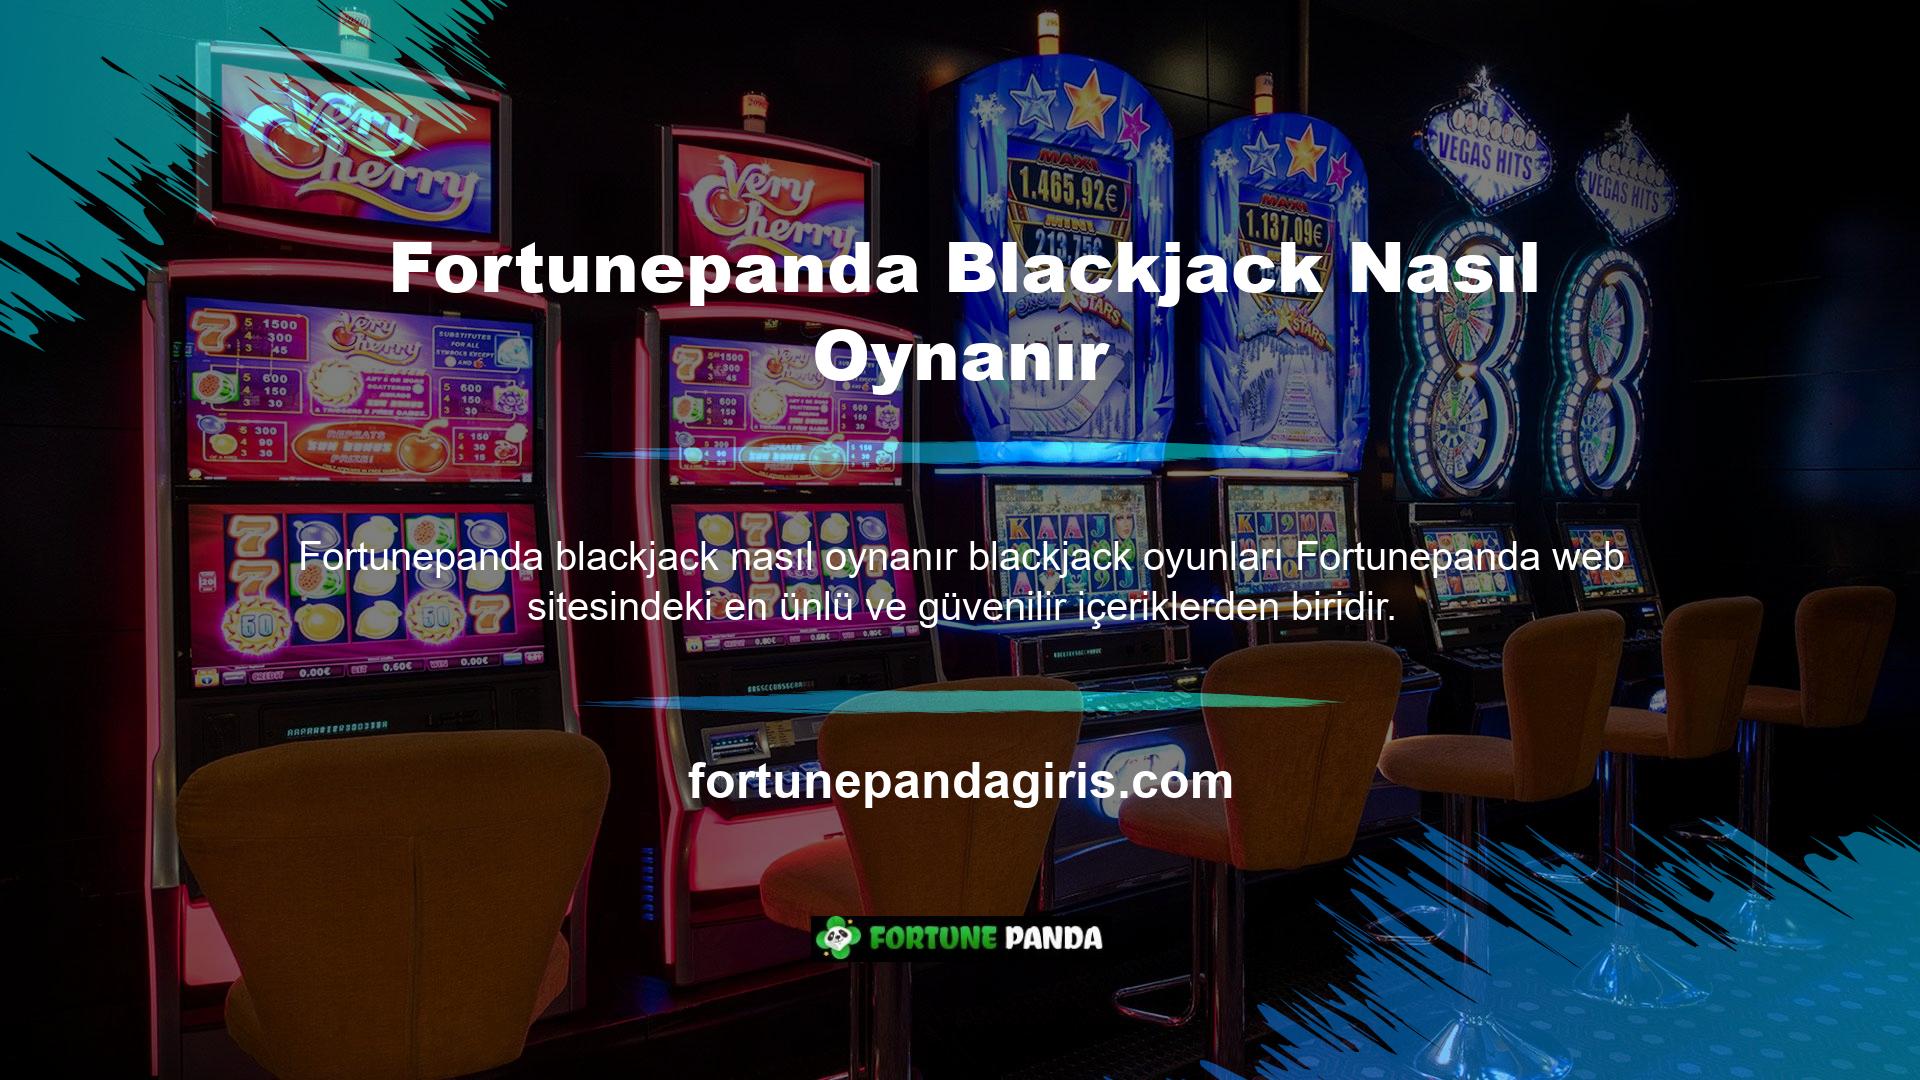 Blackjack oyununu oynayabilmek için öncelikle site üzerinden gerekli kayıt işlemini tamamlamanız gerekmektedir